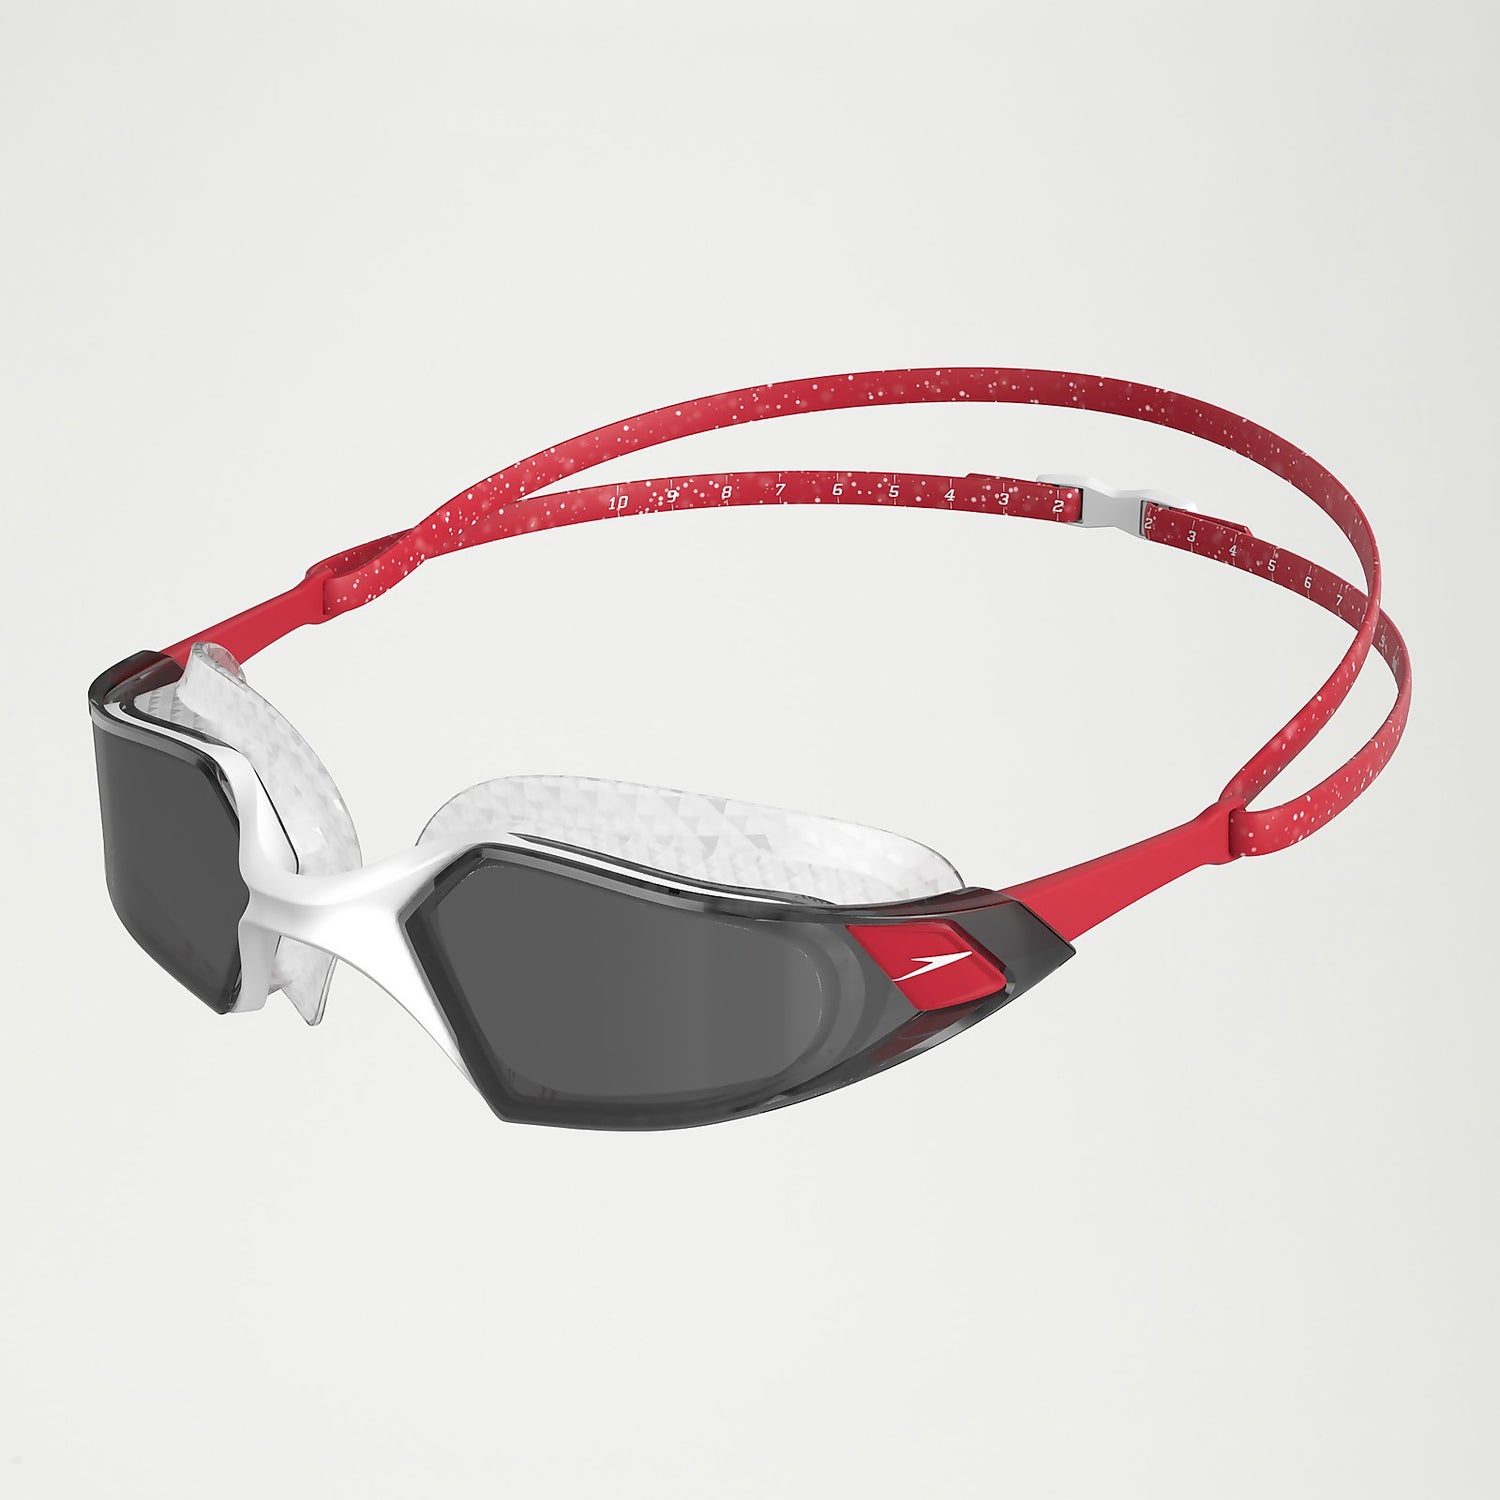 Gafas De Natación Speedo Pro Mirror - Negro - Gafas De Natación Speedo Pro  Mirror